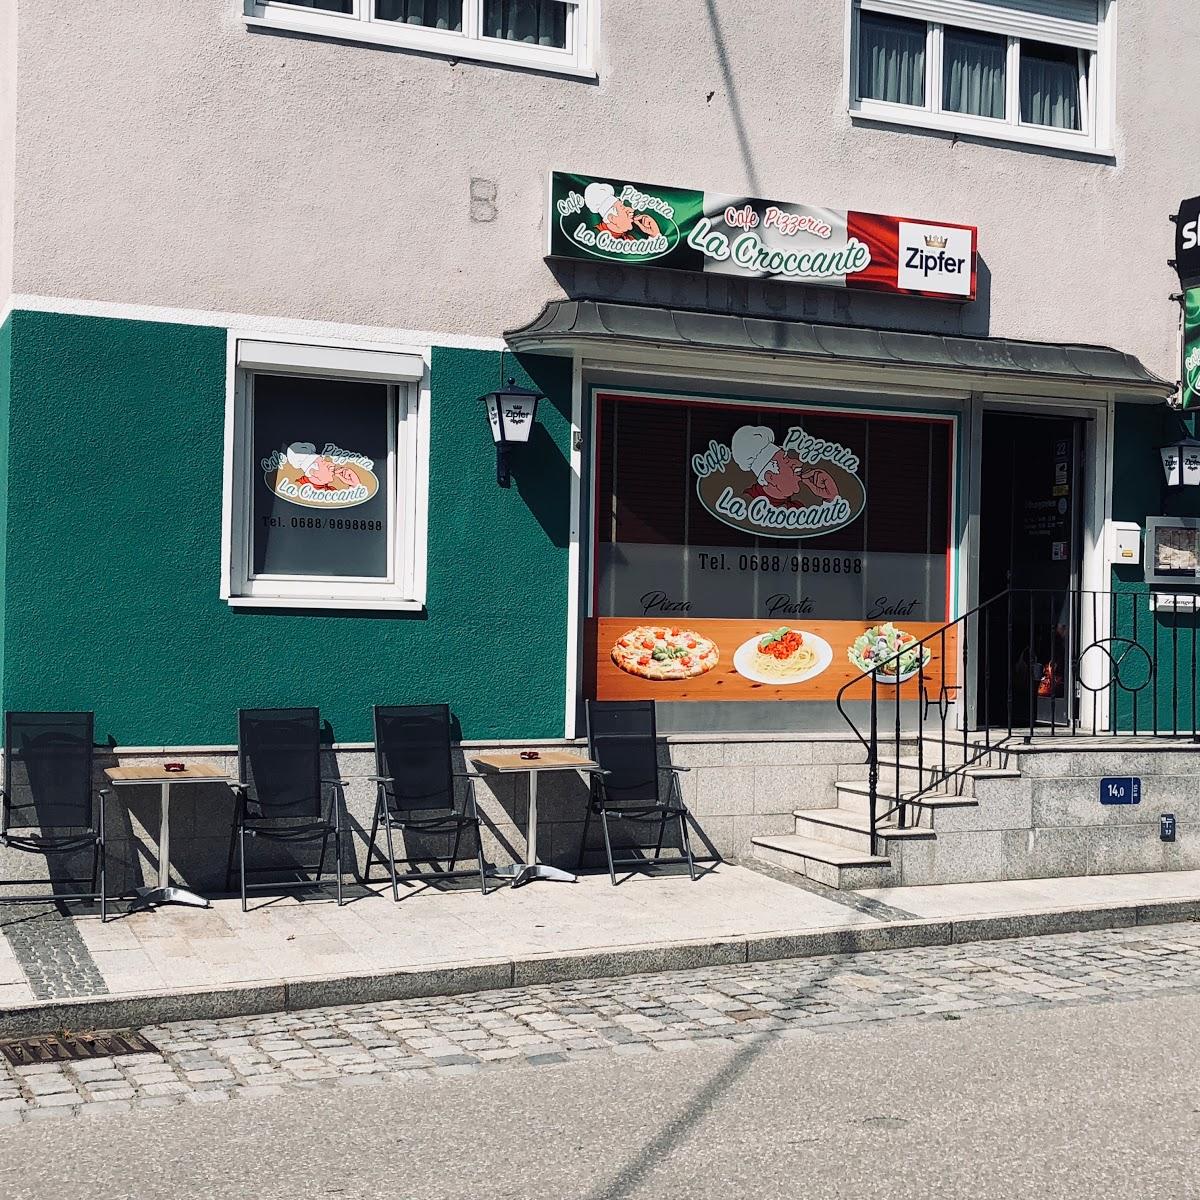 Restaurant "Cafe Pizzeria La Croccante" in Gaspoltshofen